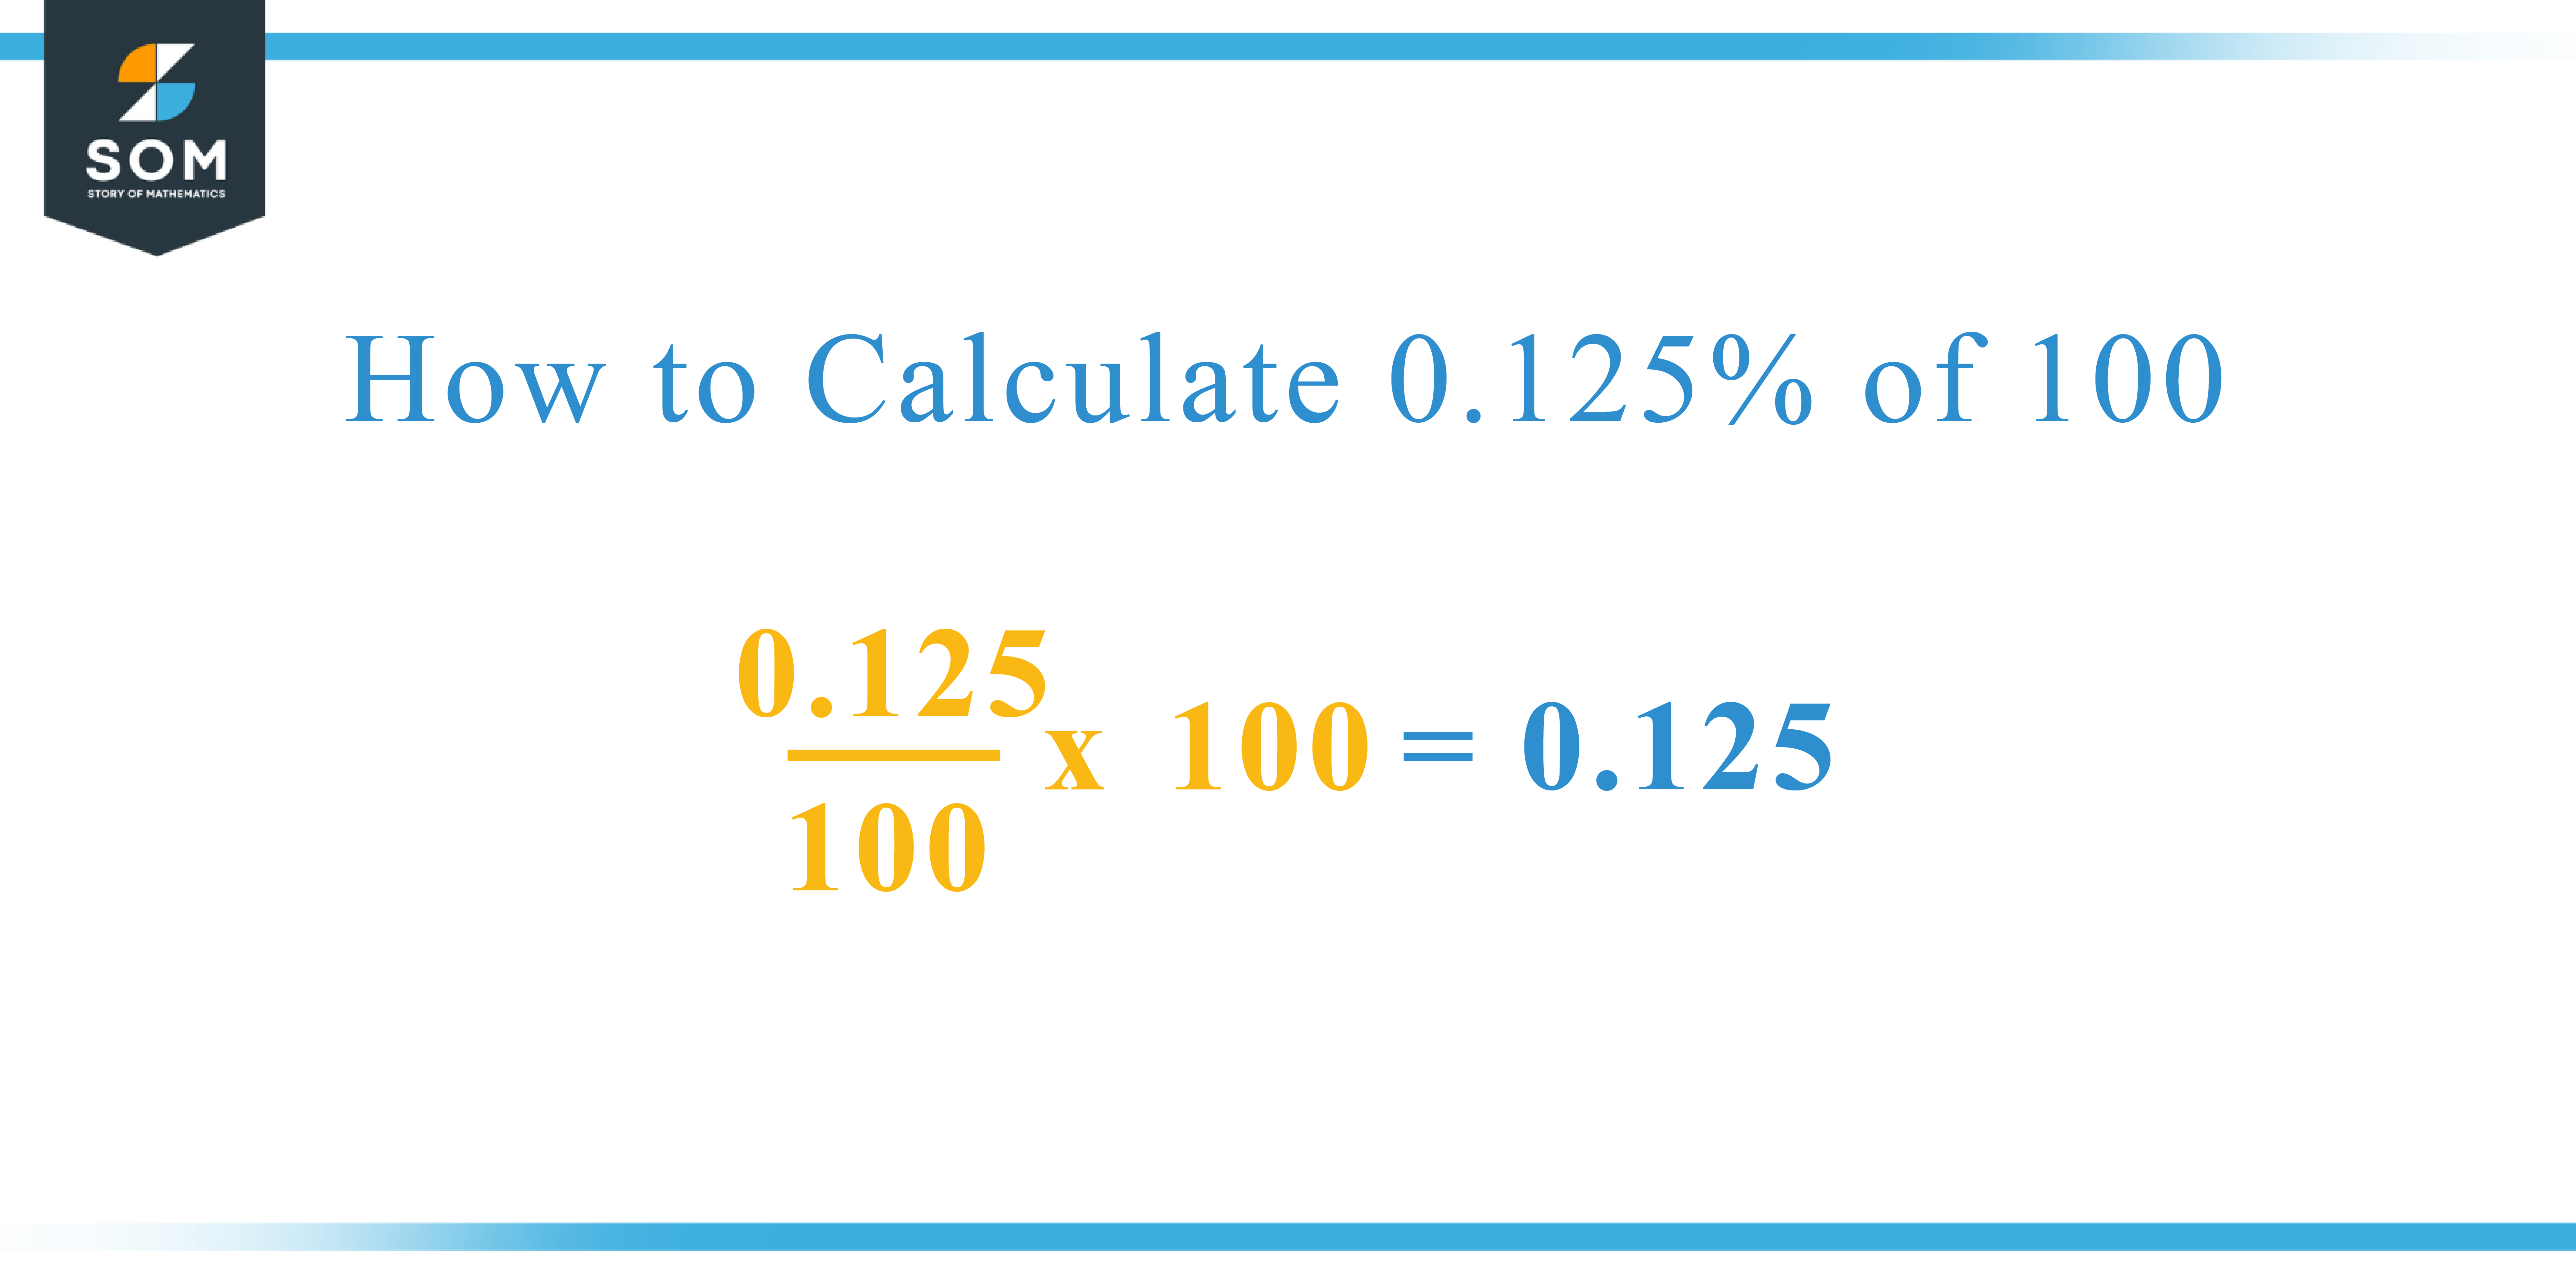 Calculation 0.125 percent of 100